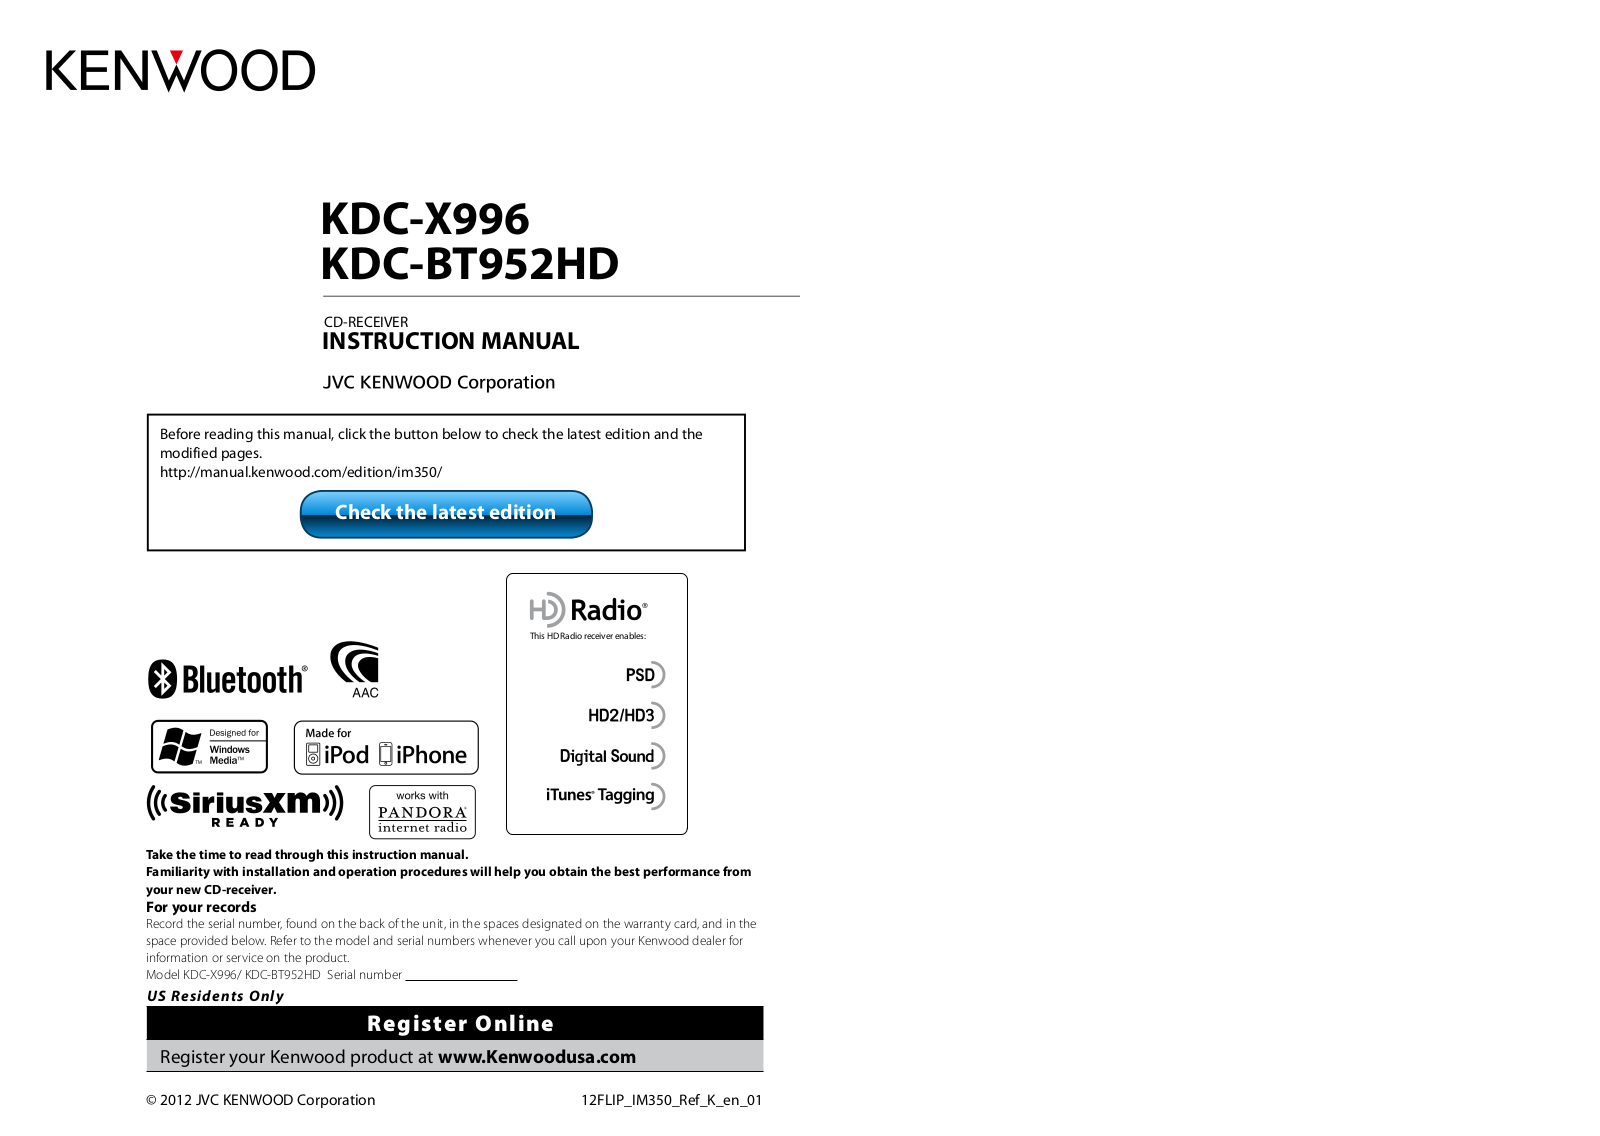 Kenwood KDC-X996 User Manual